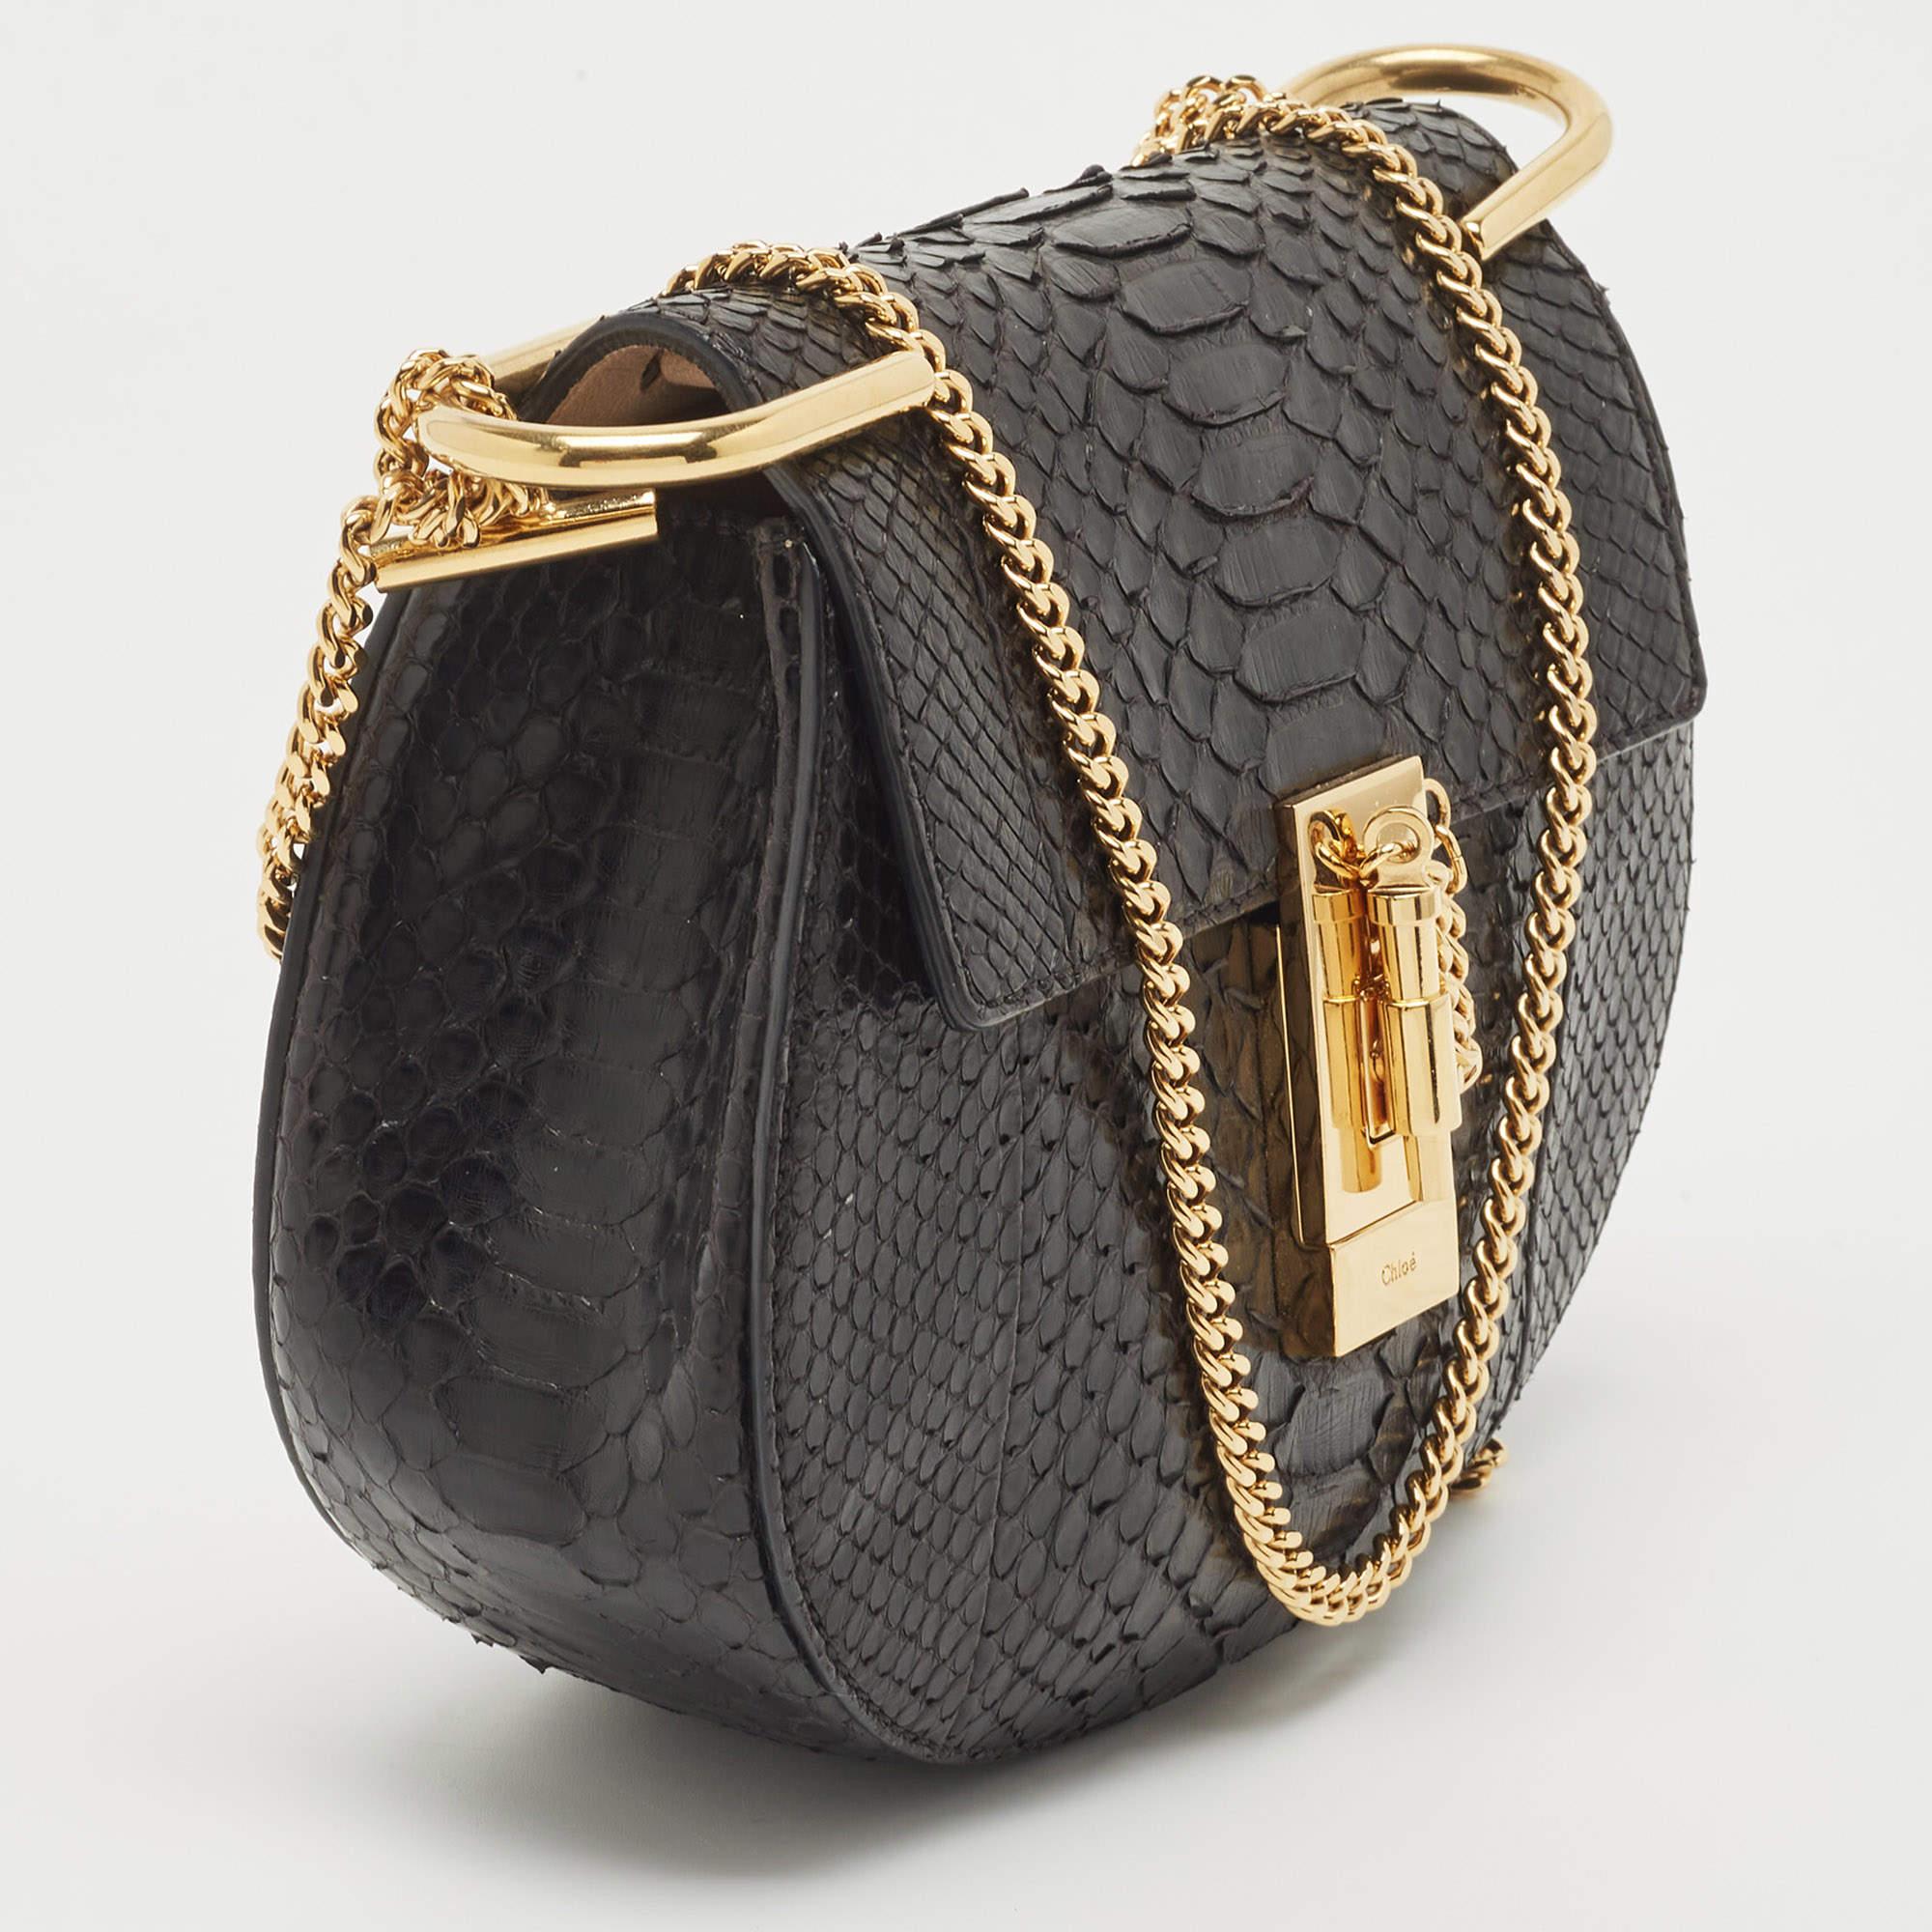 Le sac Drew de Chloé est l'un des sacs les plus reconnaissables dans le monde du luxe. Il est connu pour sa forme distincte et ses détails minimaux. Ce sac à bandoulière a été méticuleusement confectionné en peau exotique et est doté d'une fermeture